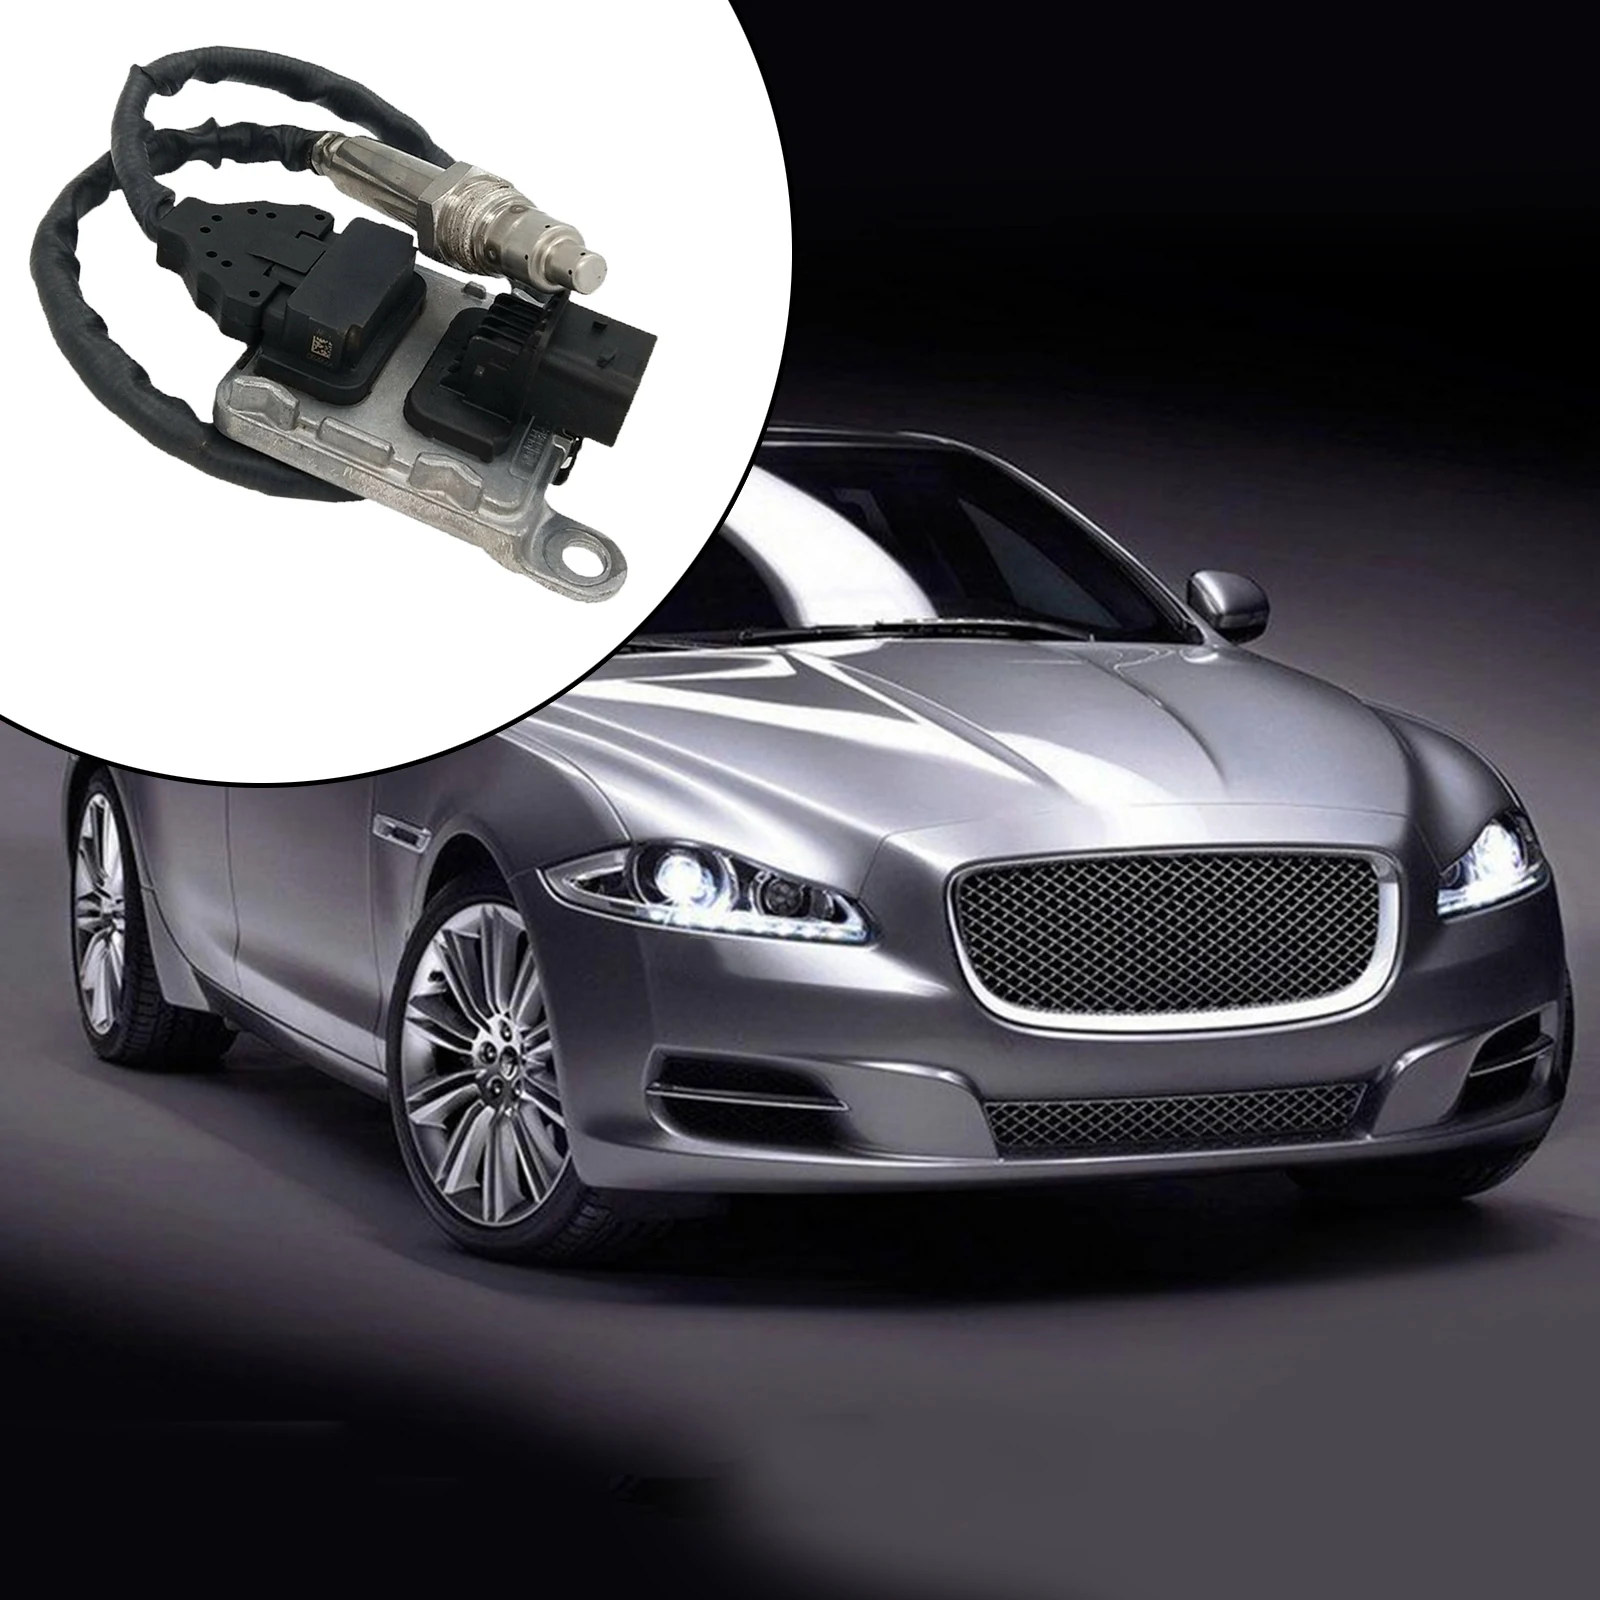 A0101531928 Nitrogen Oxide Sensor Fits for Mercedes Detroit DD13 DD15 Motor Parts Car Accessories